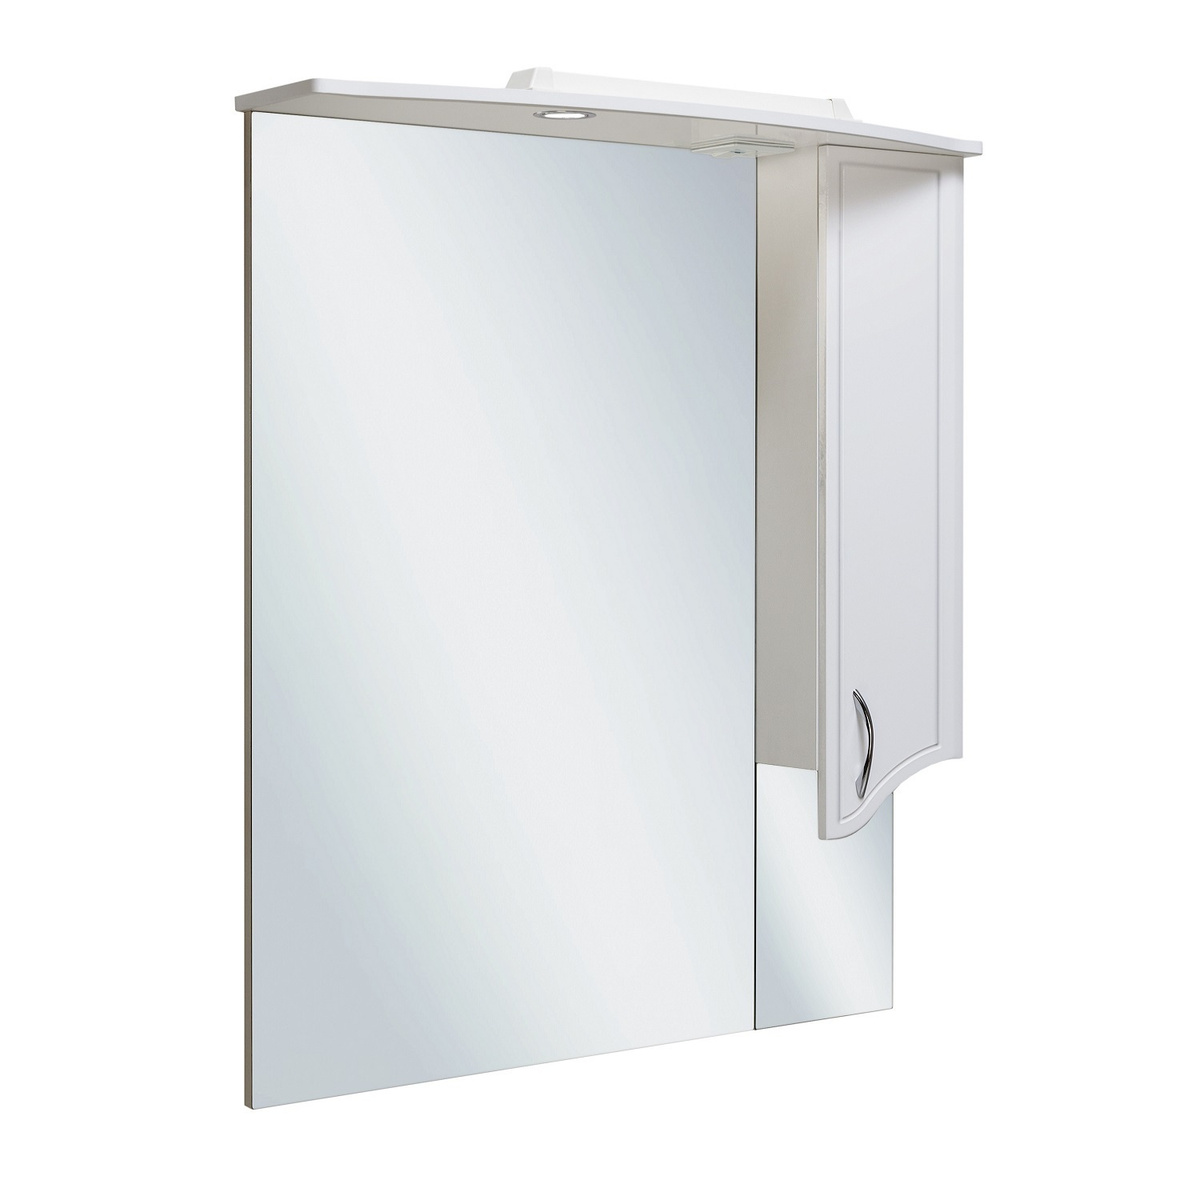 Зеркало шкаф для ванной с подсветкой / Runo / Севилья 85 / правый